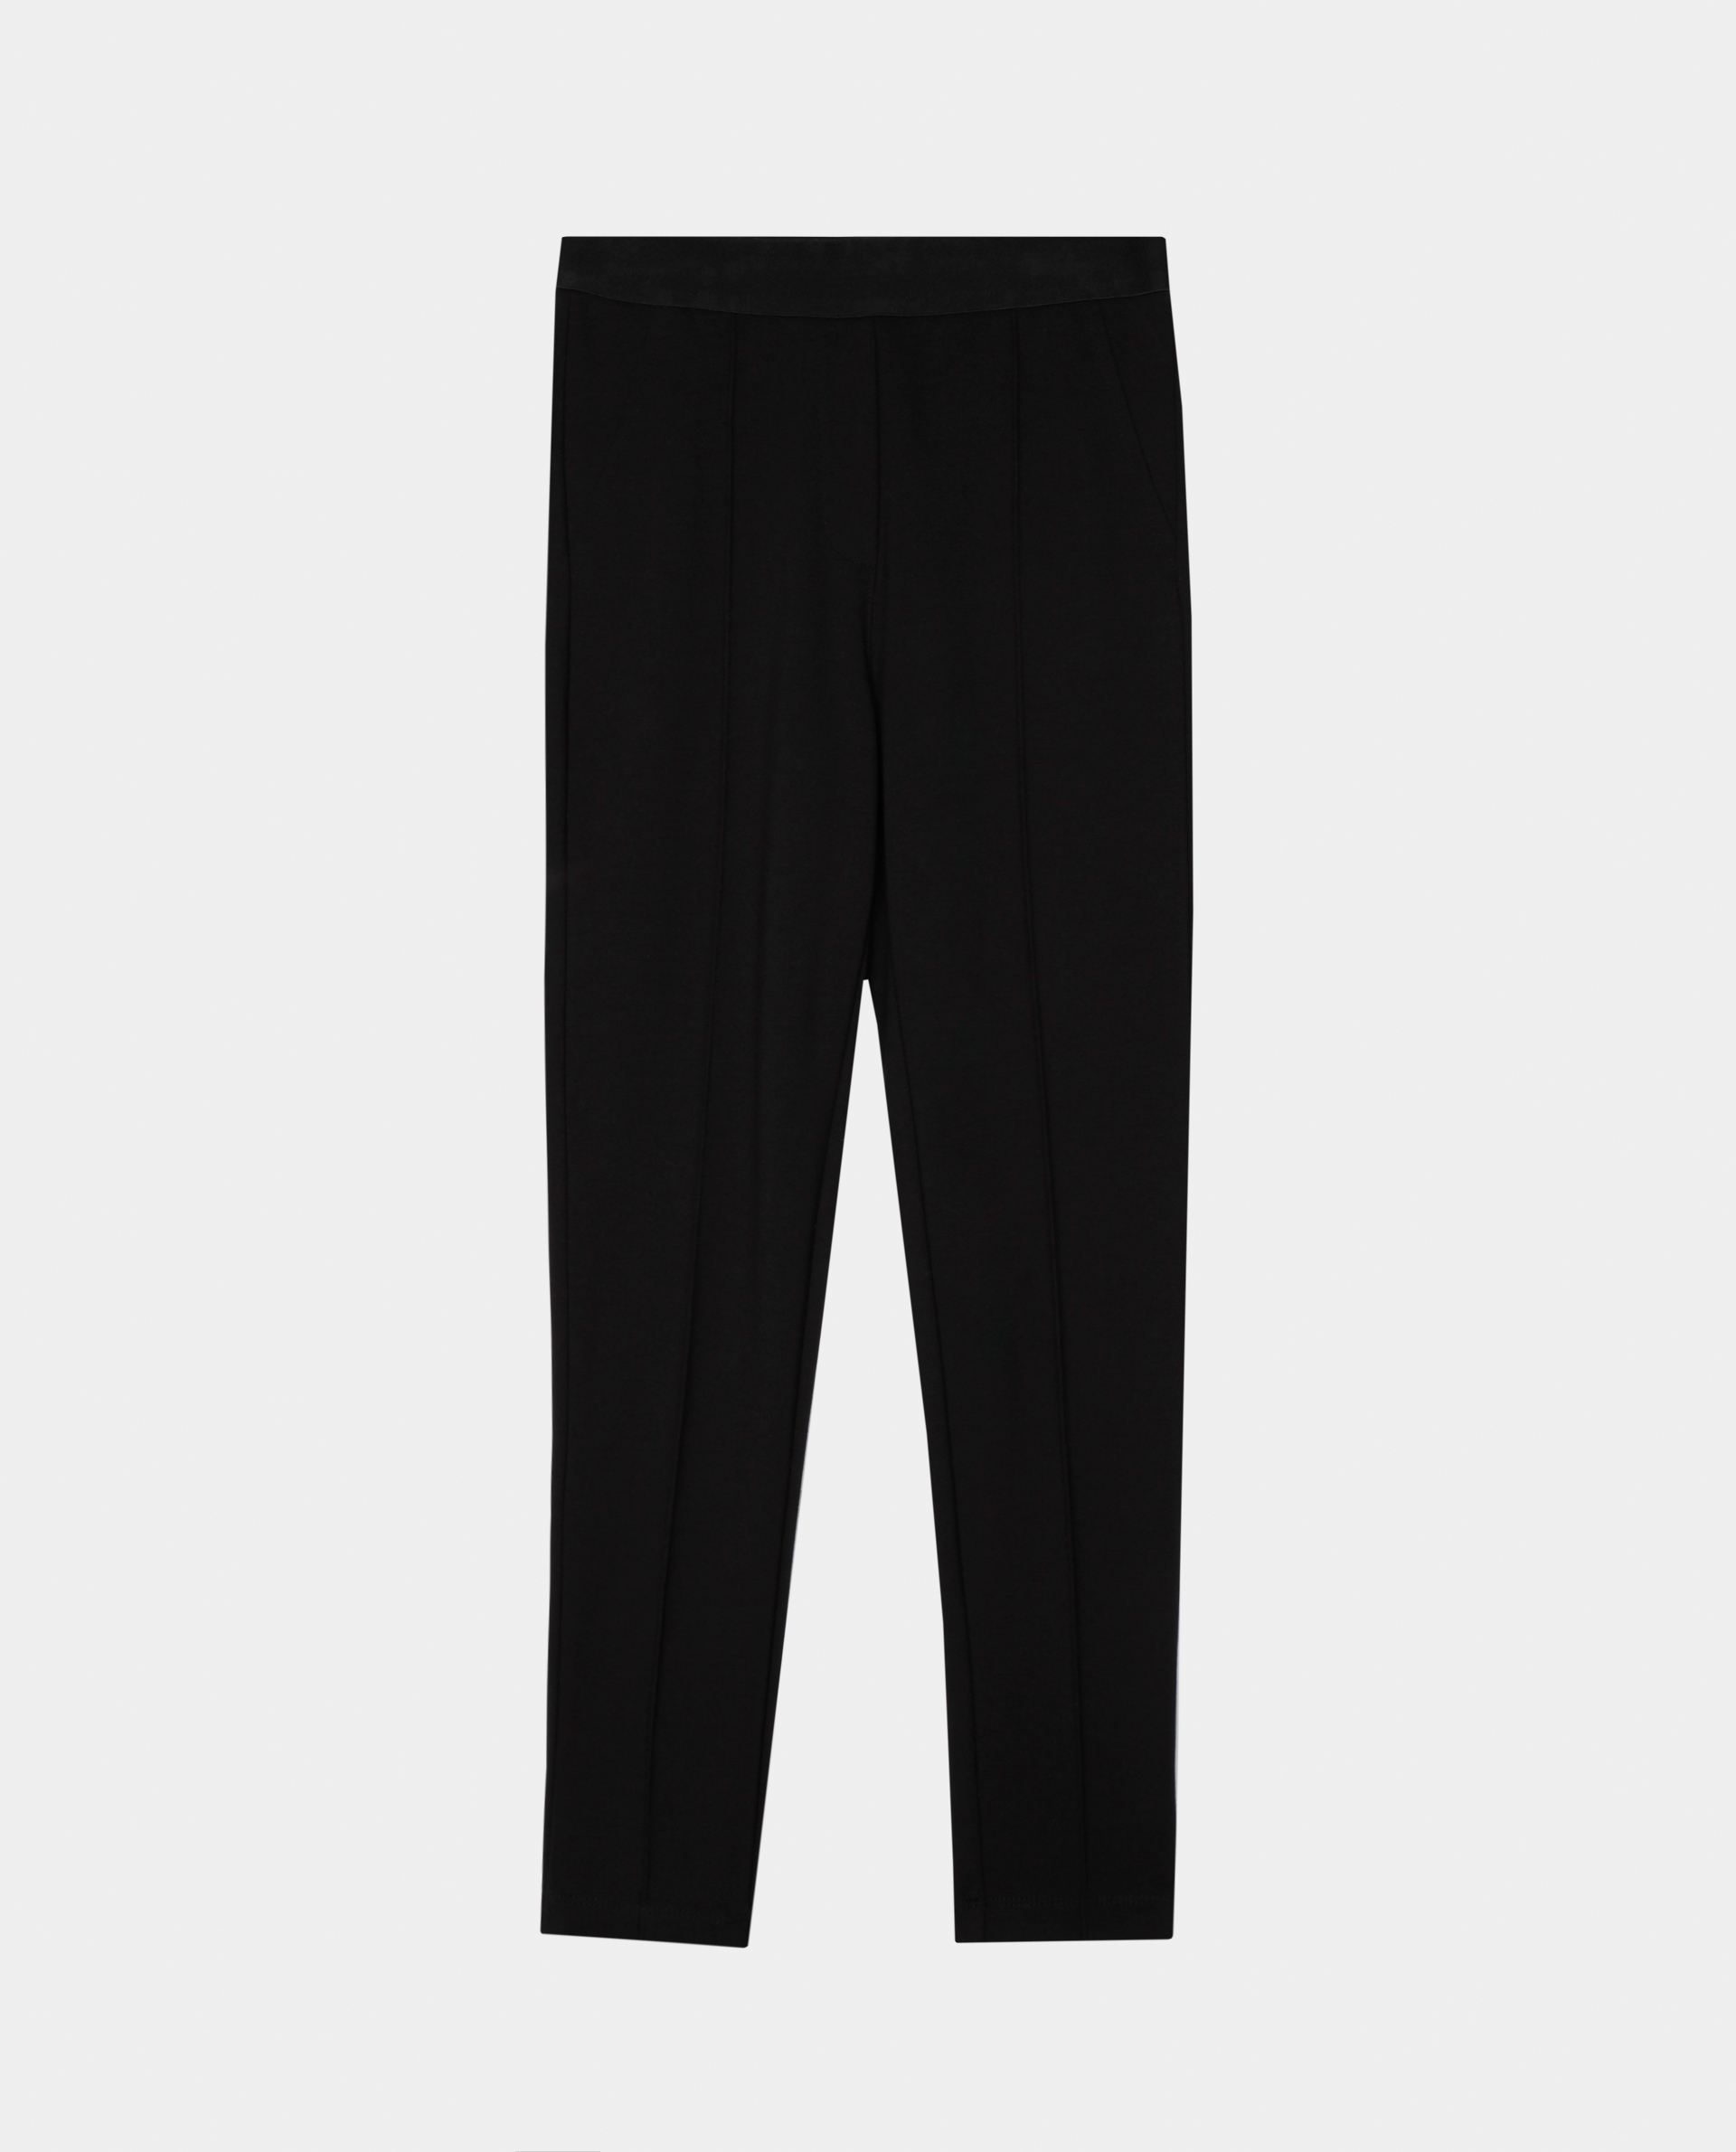 Черные брюки из джерси Gulliver 220GSGC5601, размер 158, цвет черный regular fit / прямые - фото 4